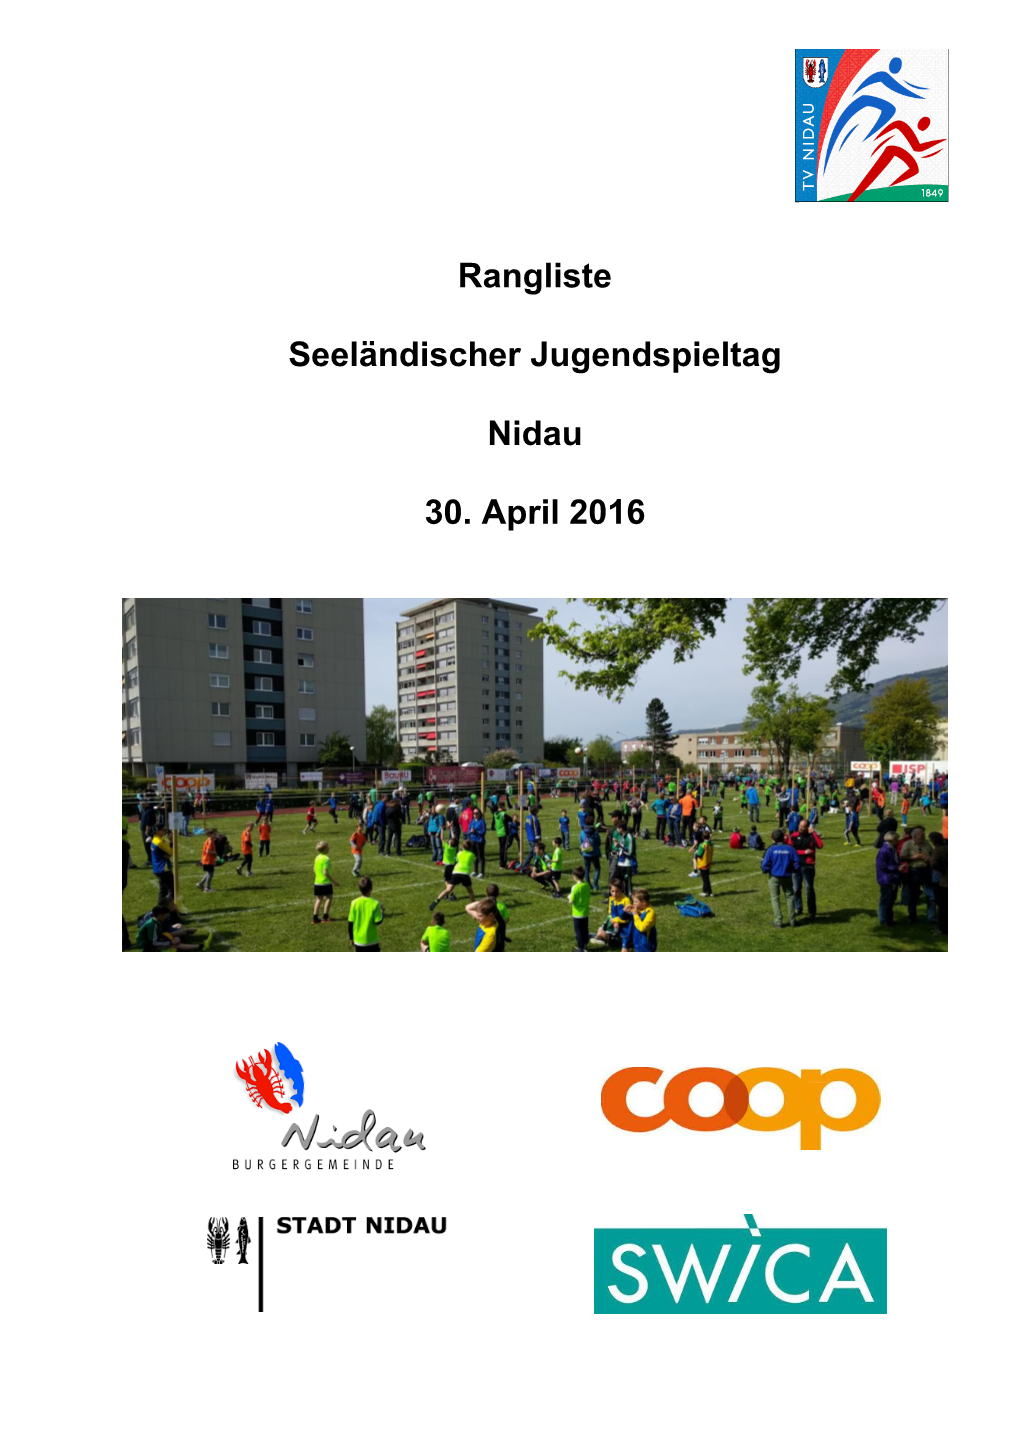 Rangliste Seeländischer Jugendspieltag Nidau 30. April 2016